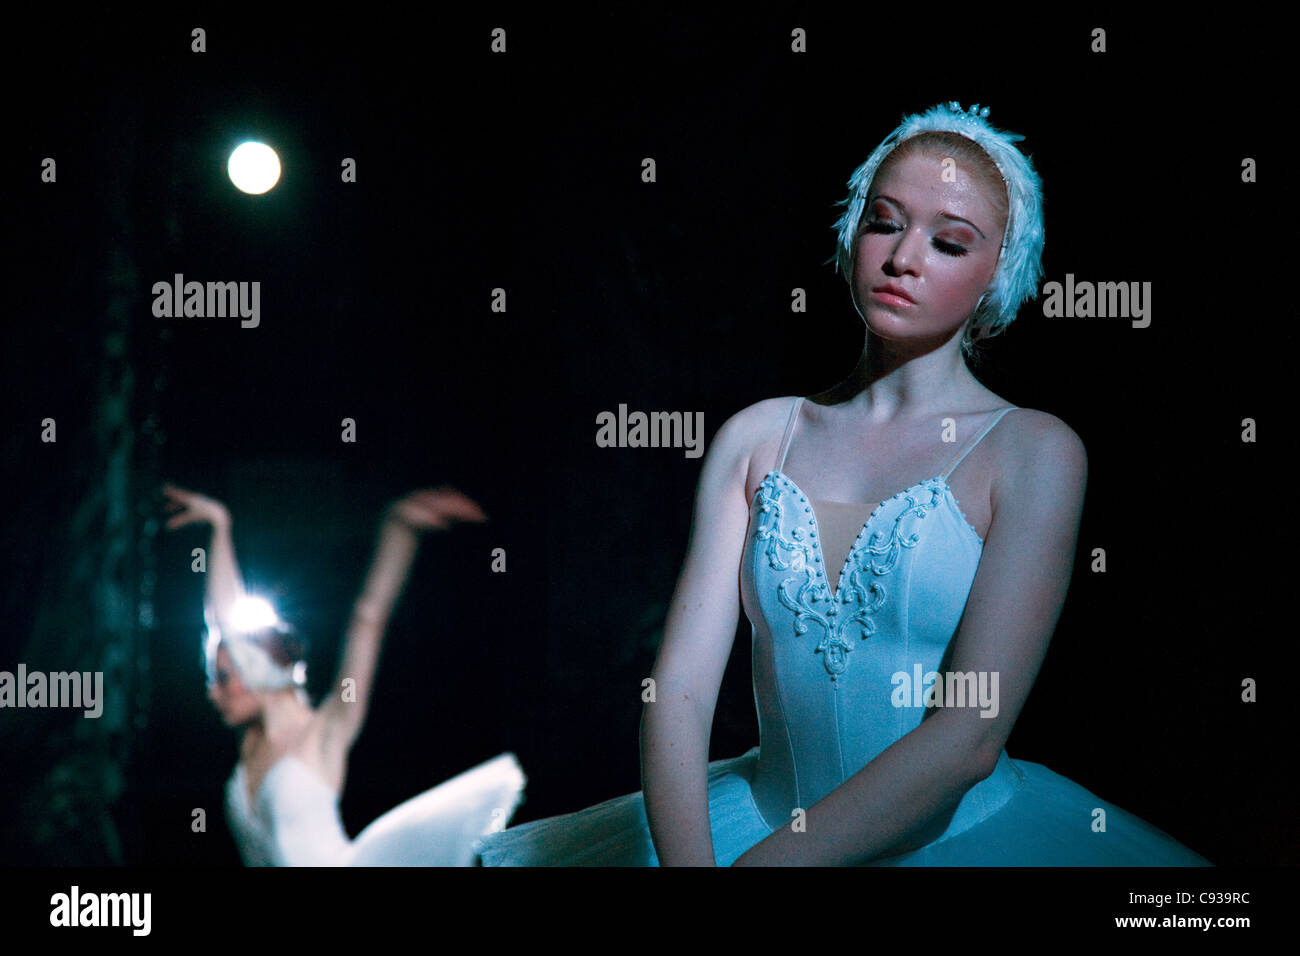 St. Petersburg, Russland; Ballett-Tänzer auf der Bühne während der Aufführung von Tschaikowskys Ballett "Schwanensee" Stockfoto